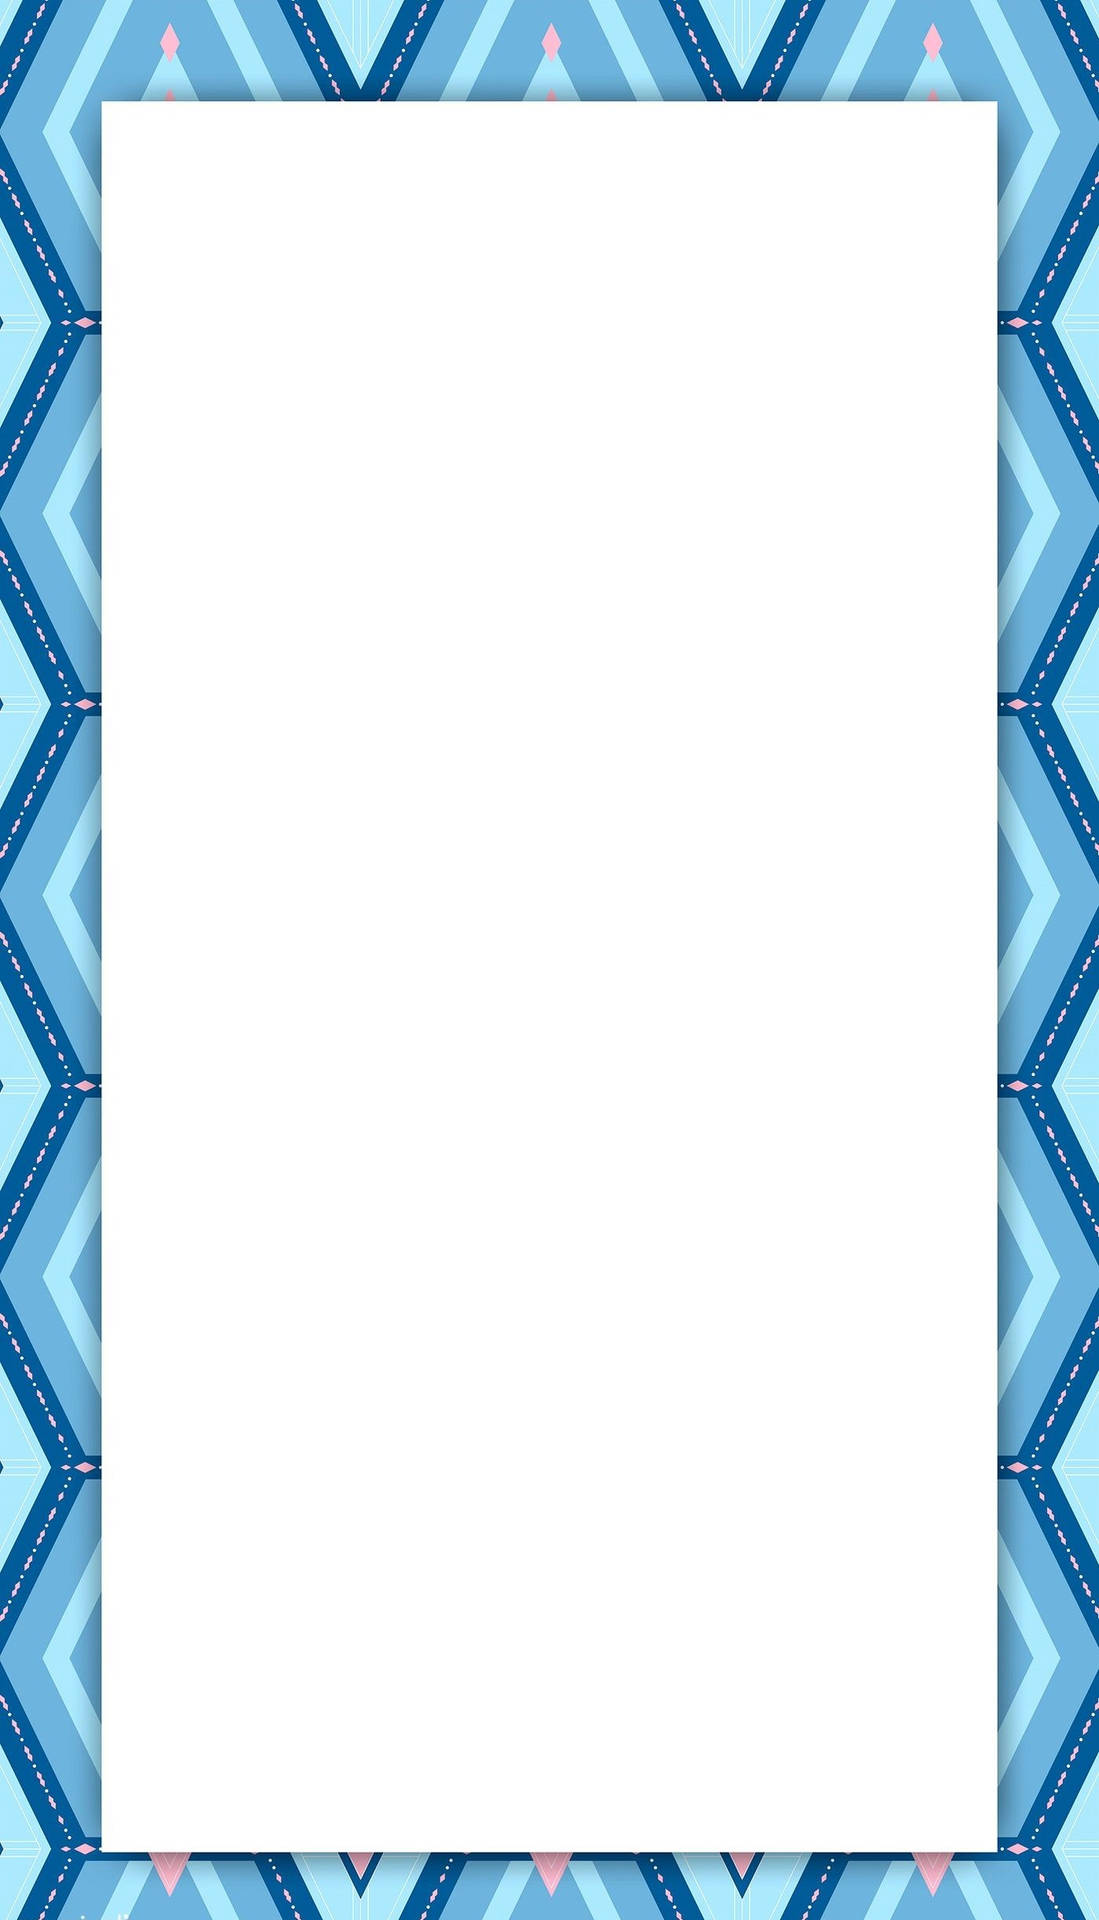 Einblau Und Rosa Chevron-muster Mit Einem Weißen Quadrat Wallpaper